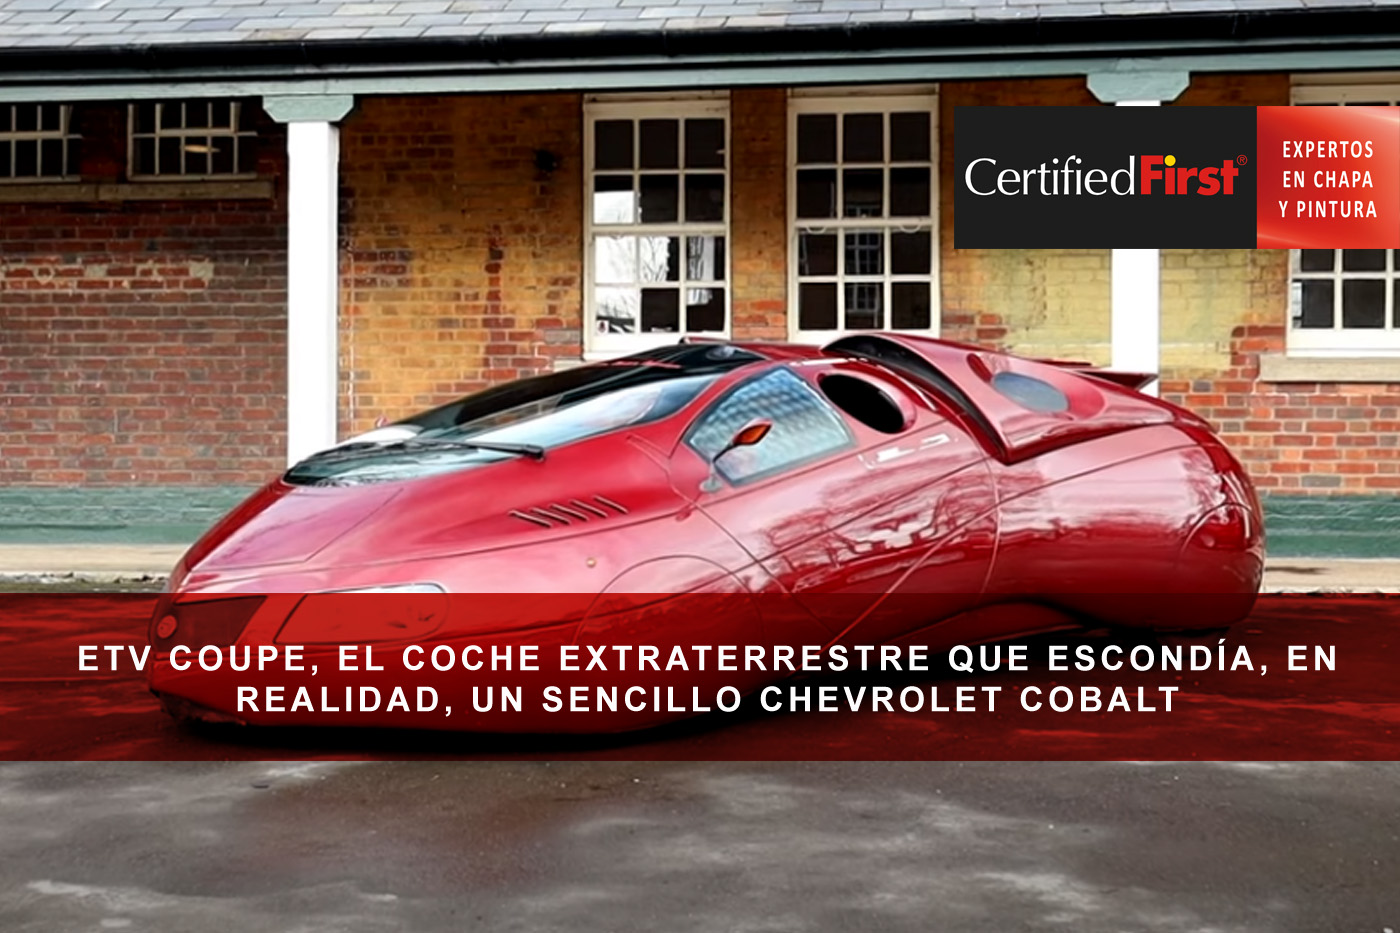 ETV Coupe, el coche extraterrestre que escondía, en realidad, un sencillo Chevrolet Cobalt